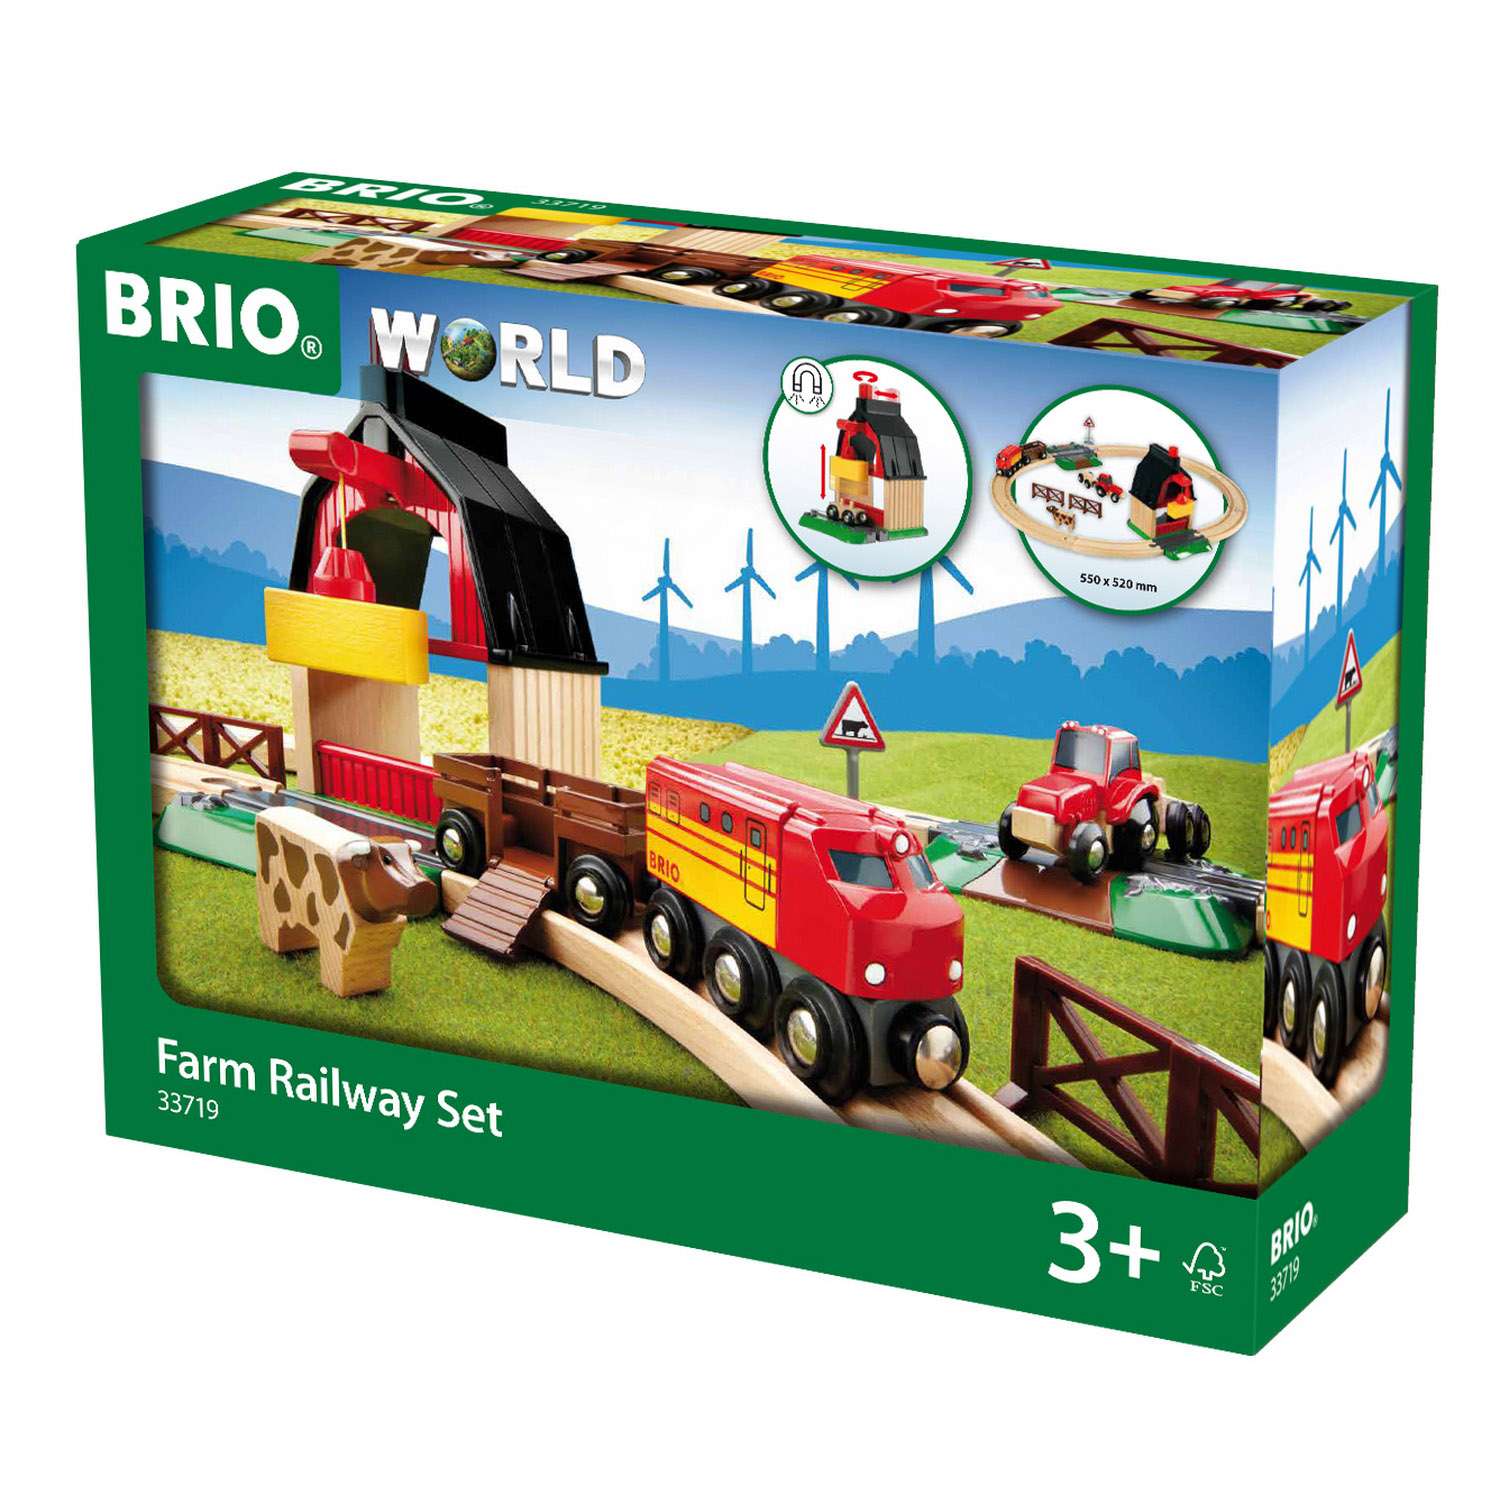 Брио. Брио 33719. Брио железная дорога ферма. Brio стартовый набор "ферма", 33719. Brio 33719 детская железная дорога.